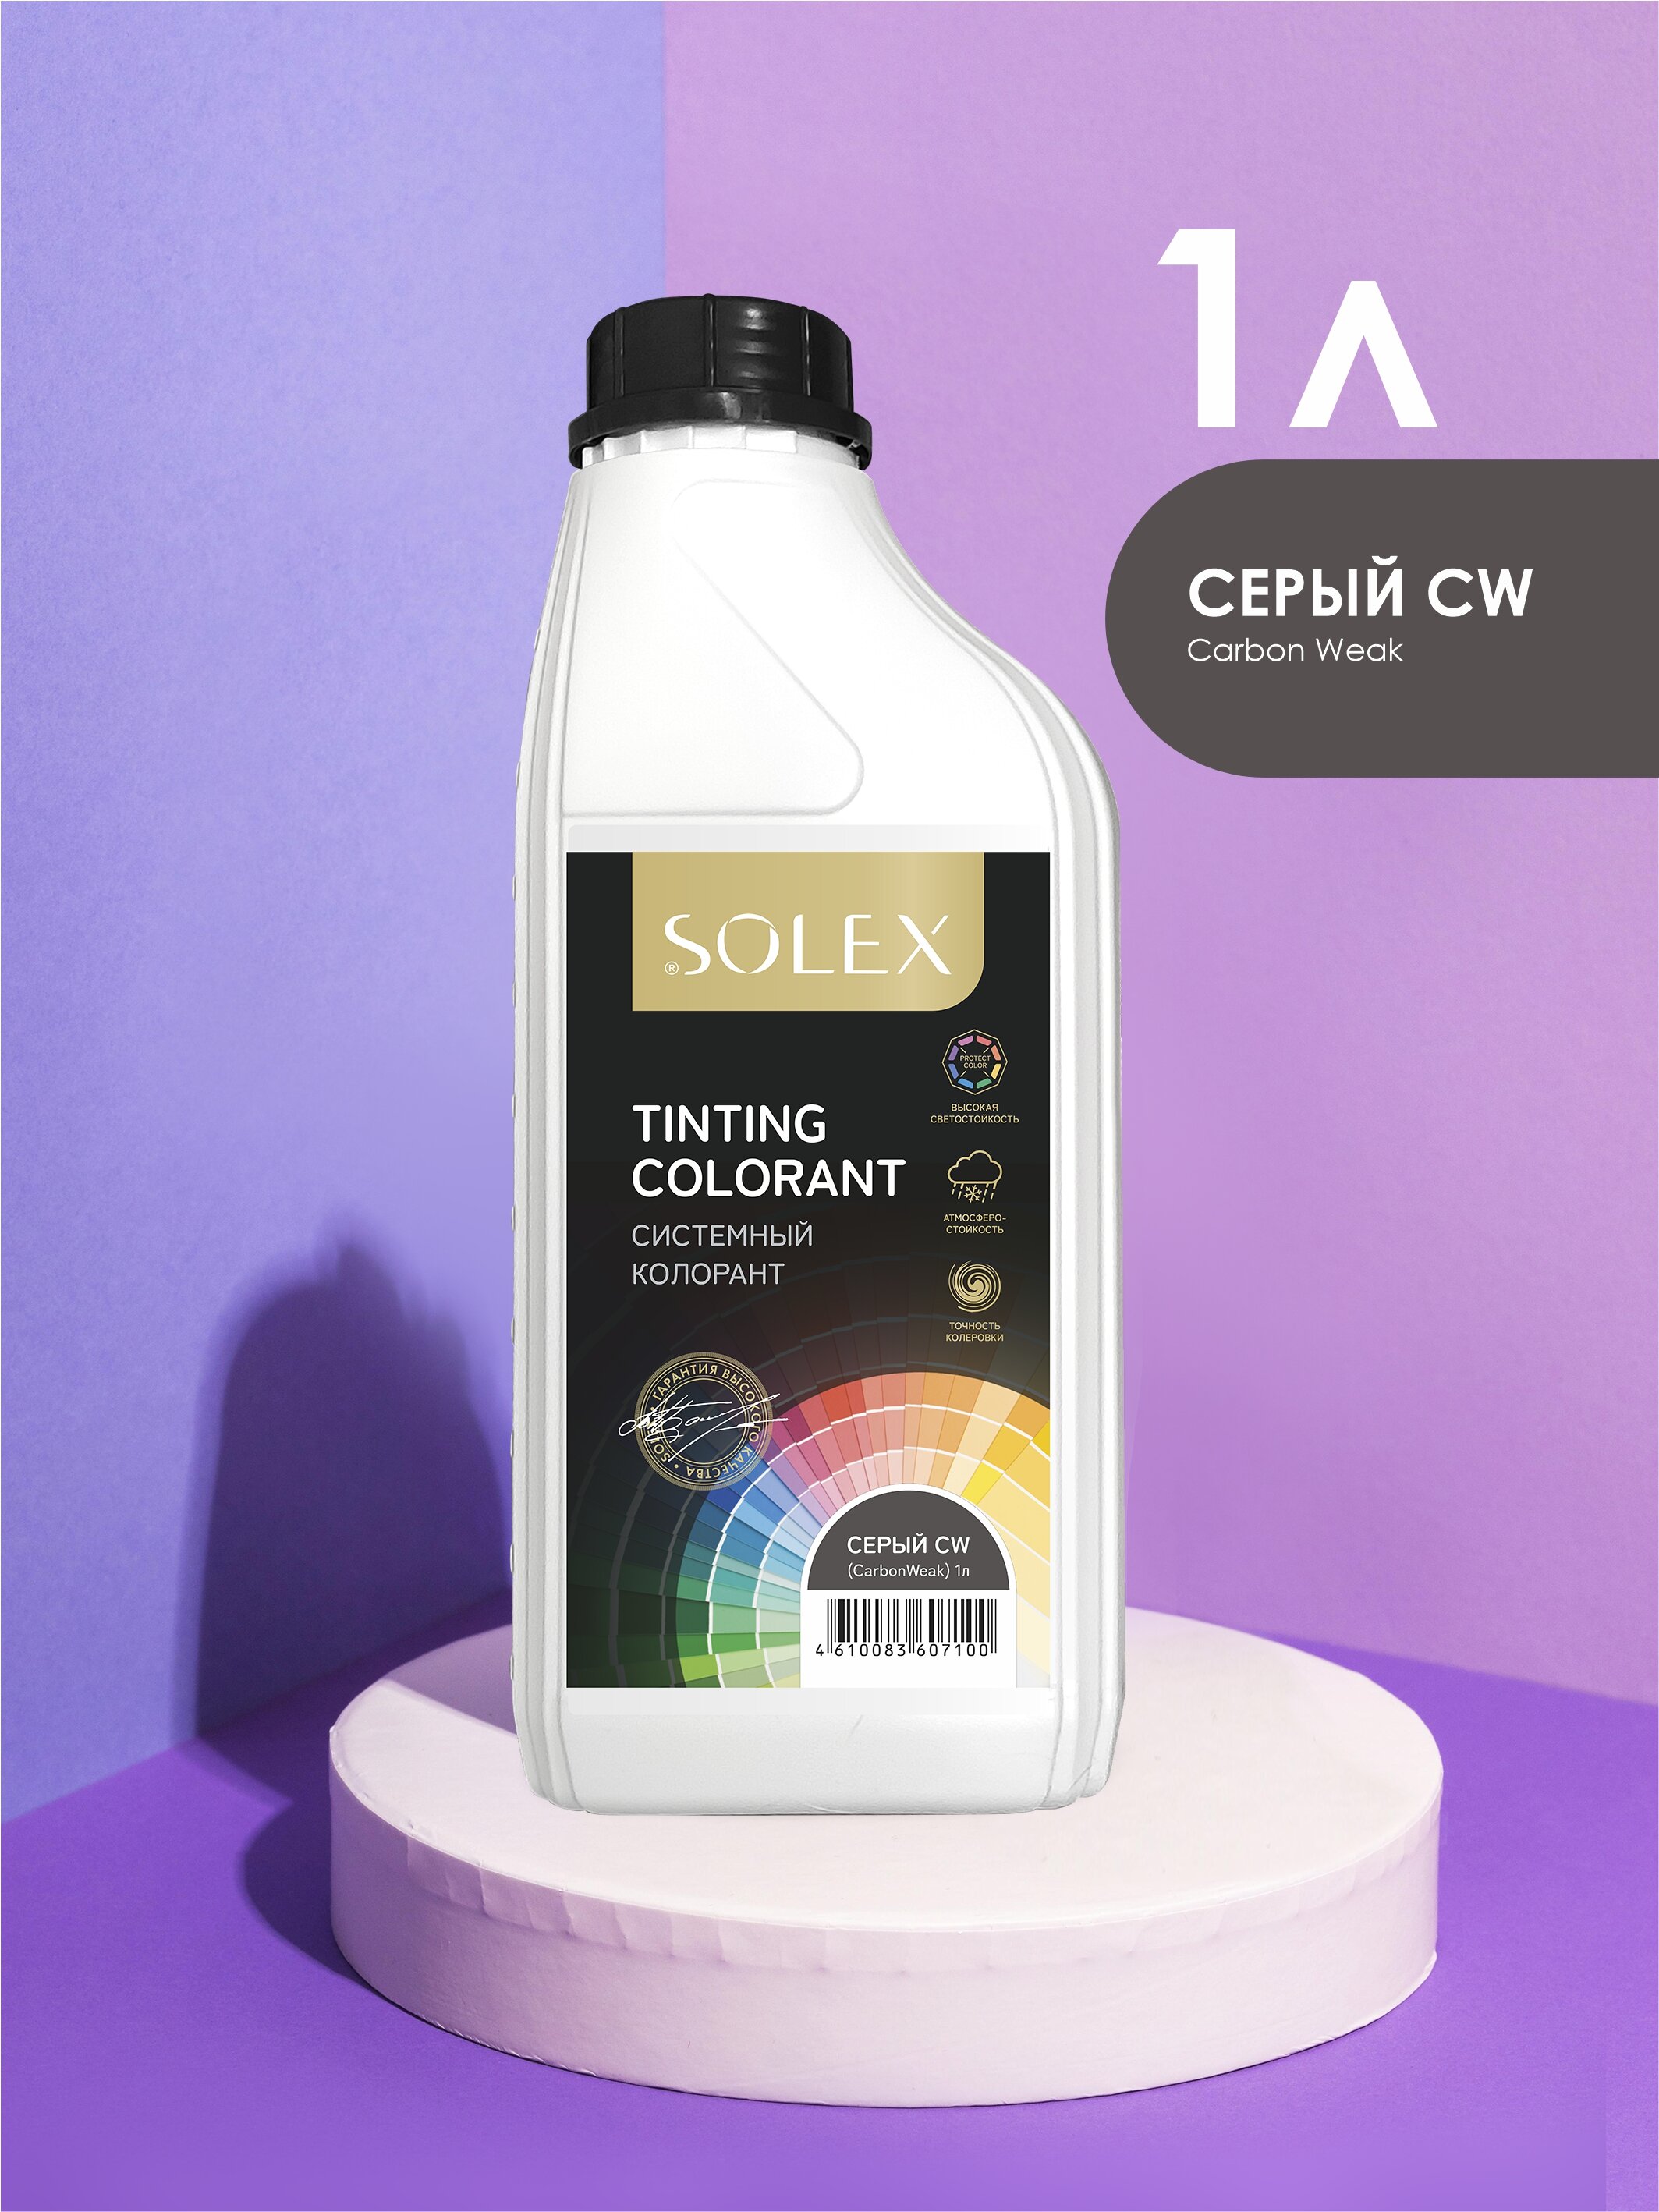 фото Колорант системный solex tinting colorant серый cw (carbonweak) 1л канистра